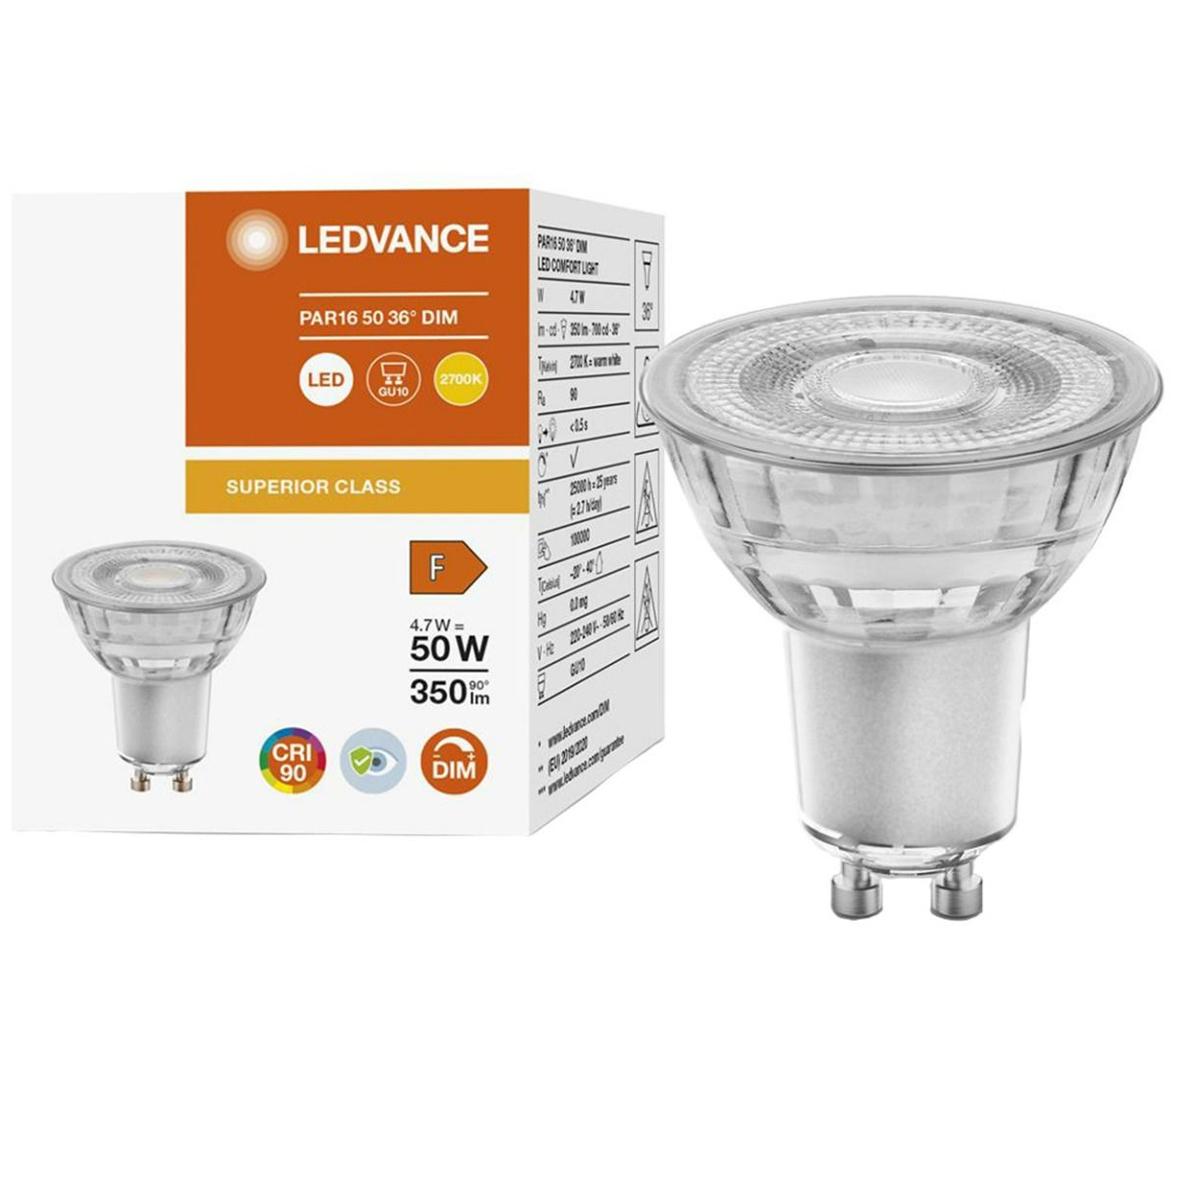 LED žárovka LED GU10 4,7W = 50W 350lm 2700K Teplá bílá 36° CRI90 Stmívatelná skleněná LEDVANCE Superior